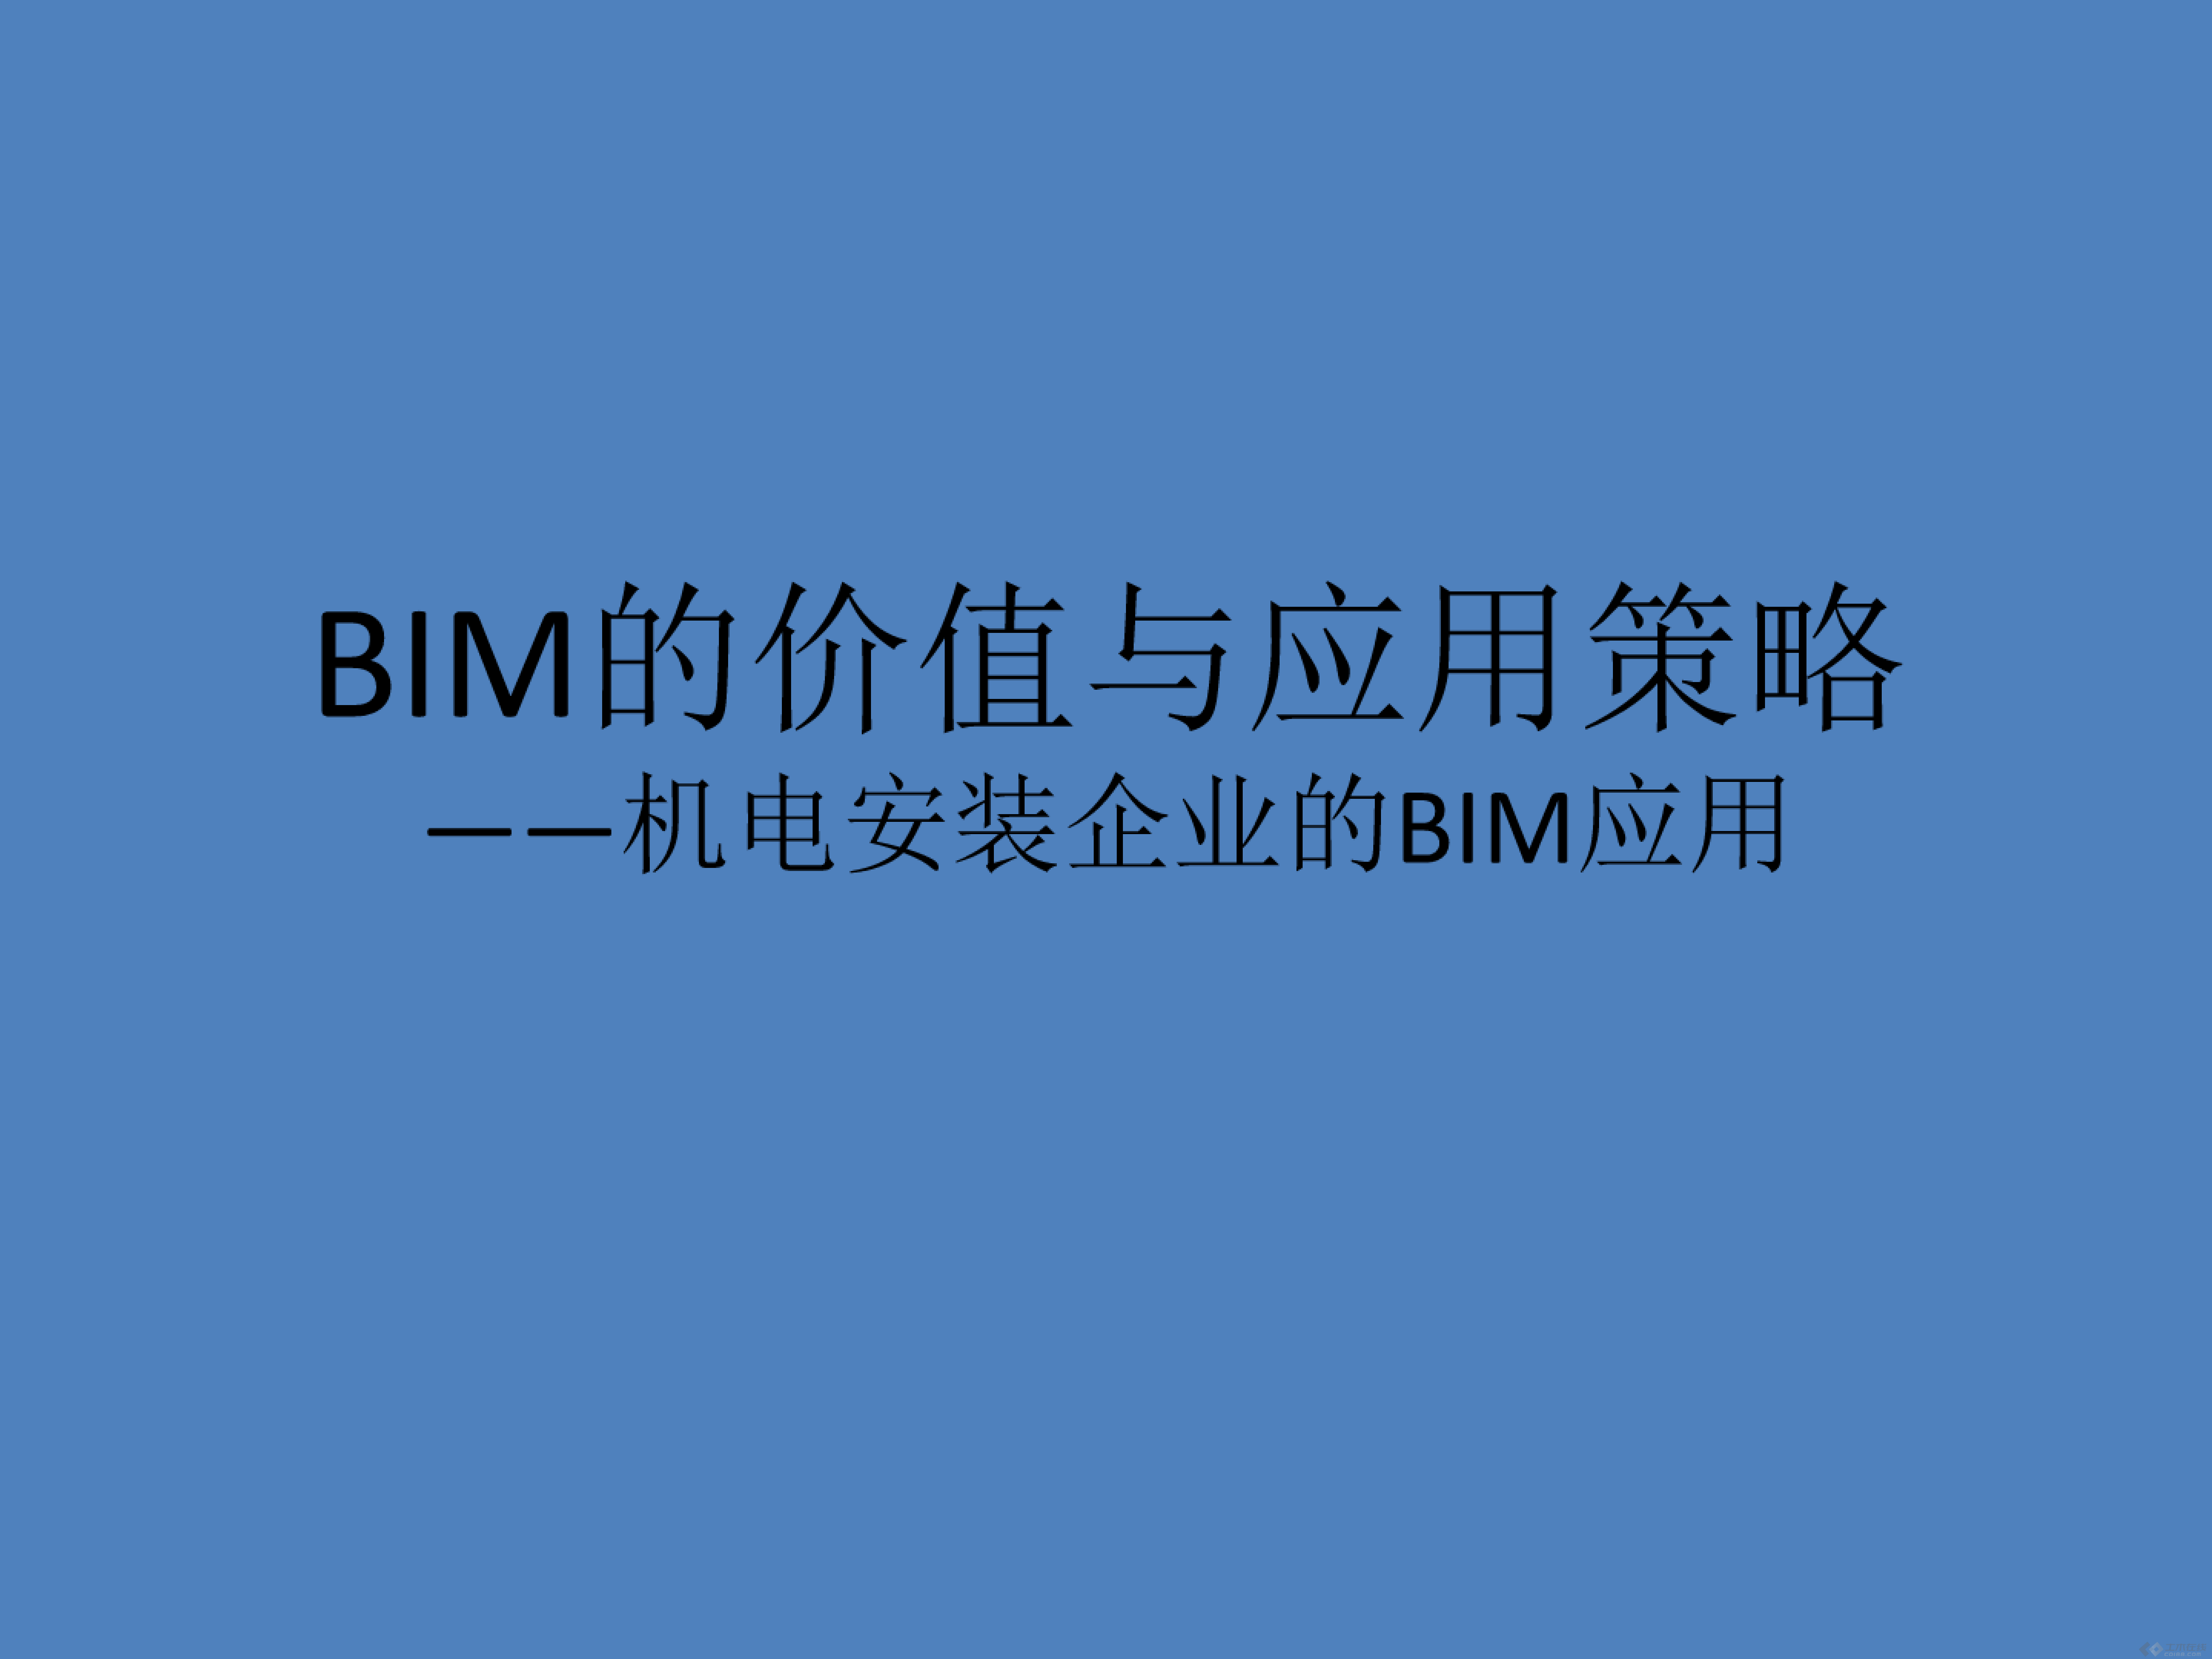 机电安装企业bim应用_00.png